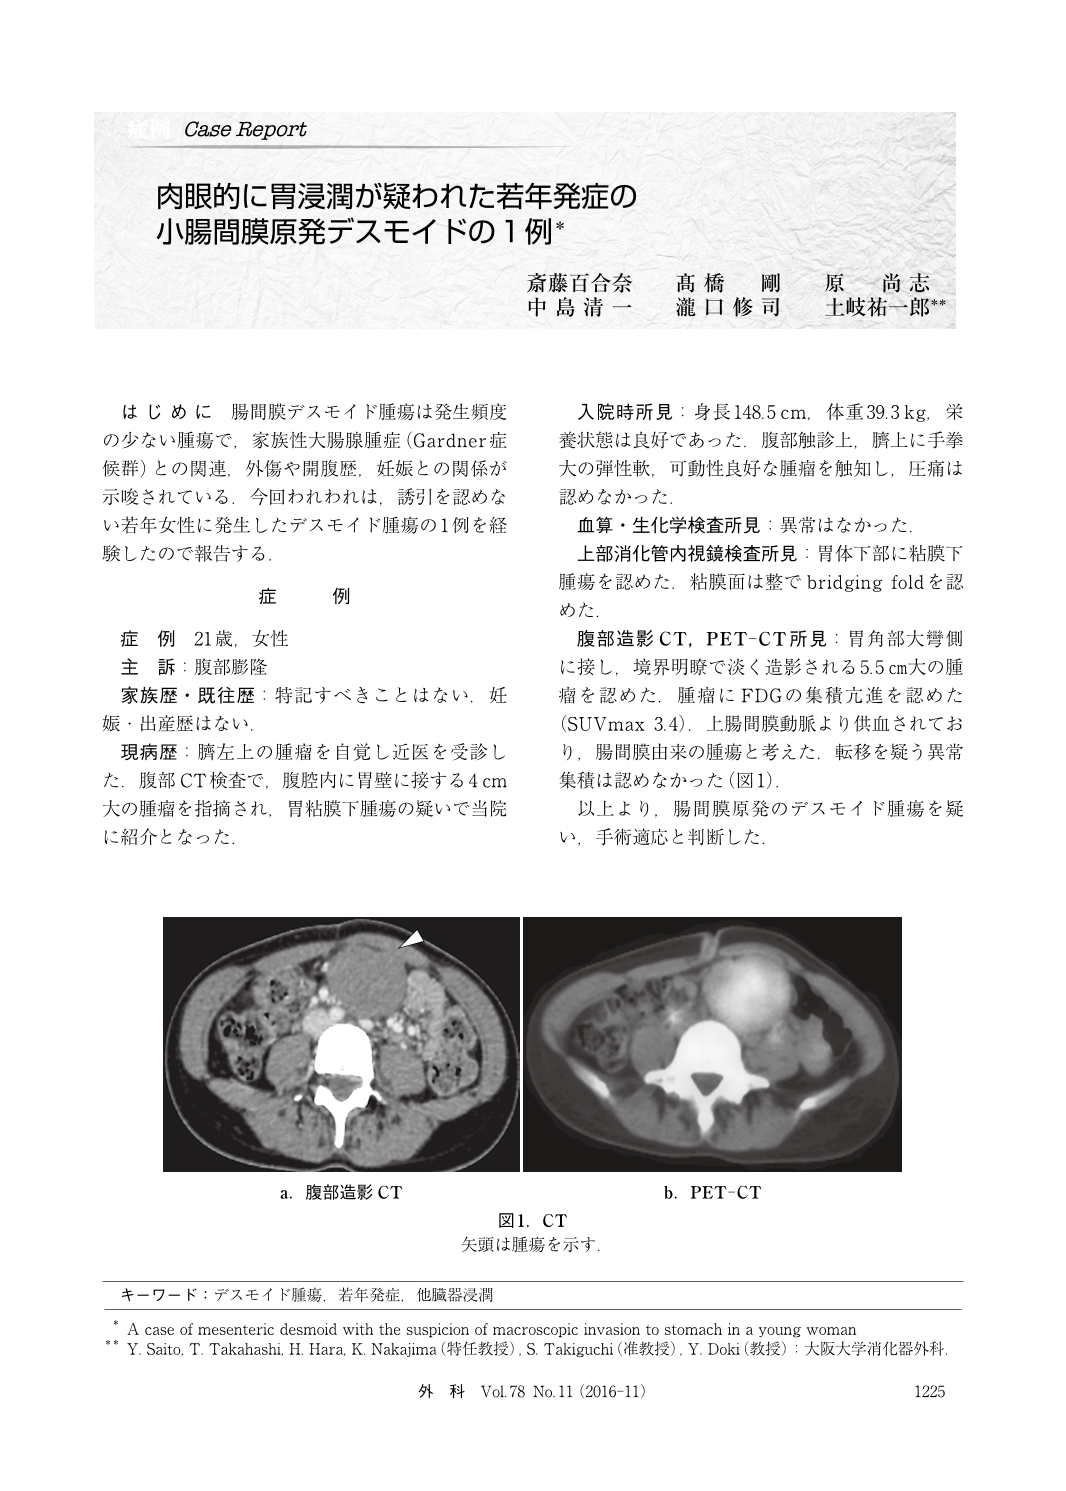 肉眼的に胃浸潤が疑われた若年発症の小腸間膜原発デスモイドの1例 臨床雑誌外科 78巻11号 医書 Jp